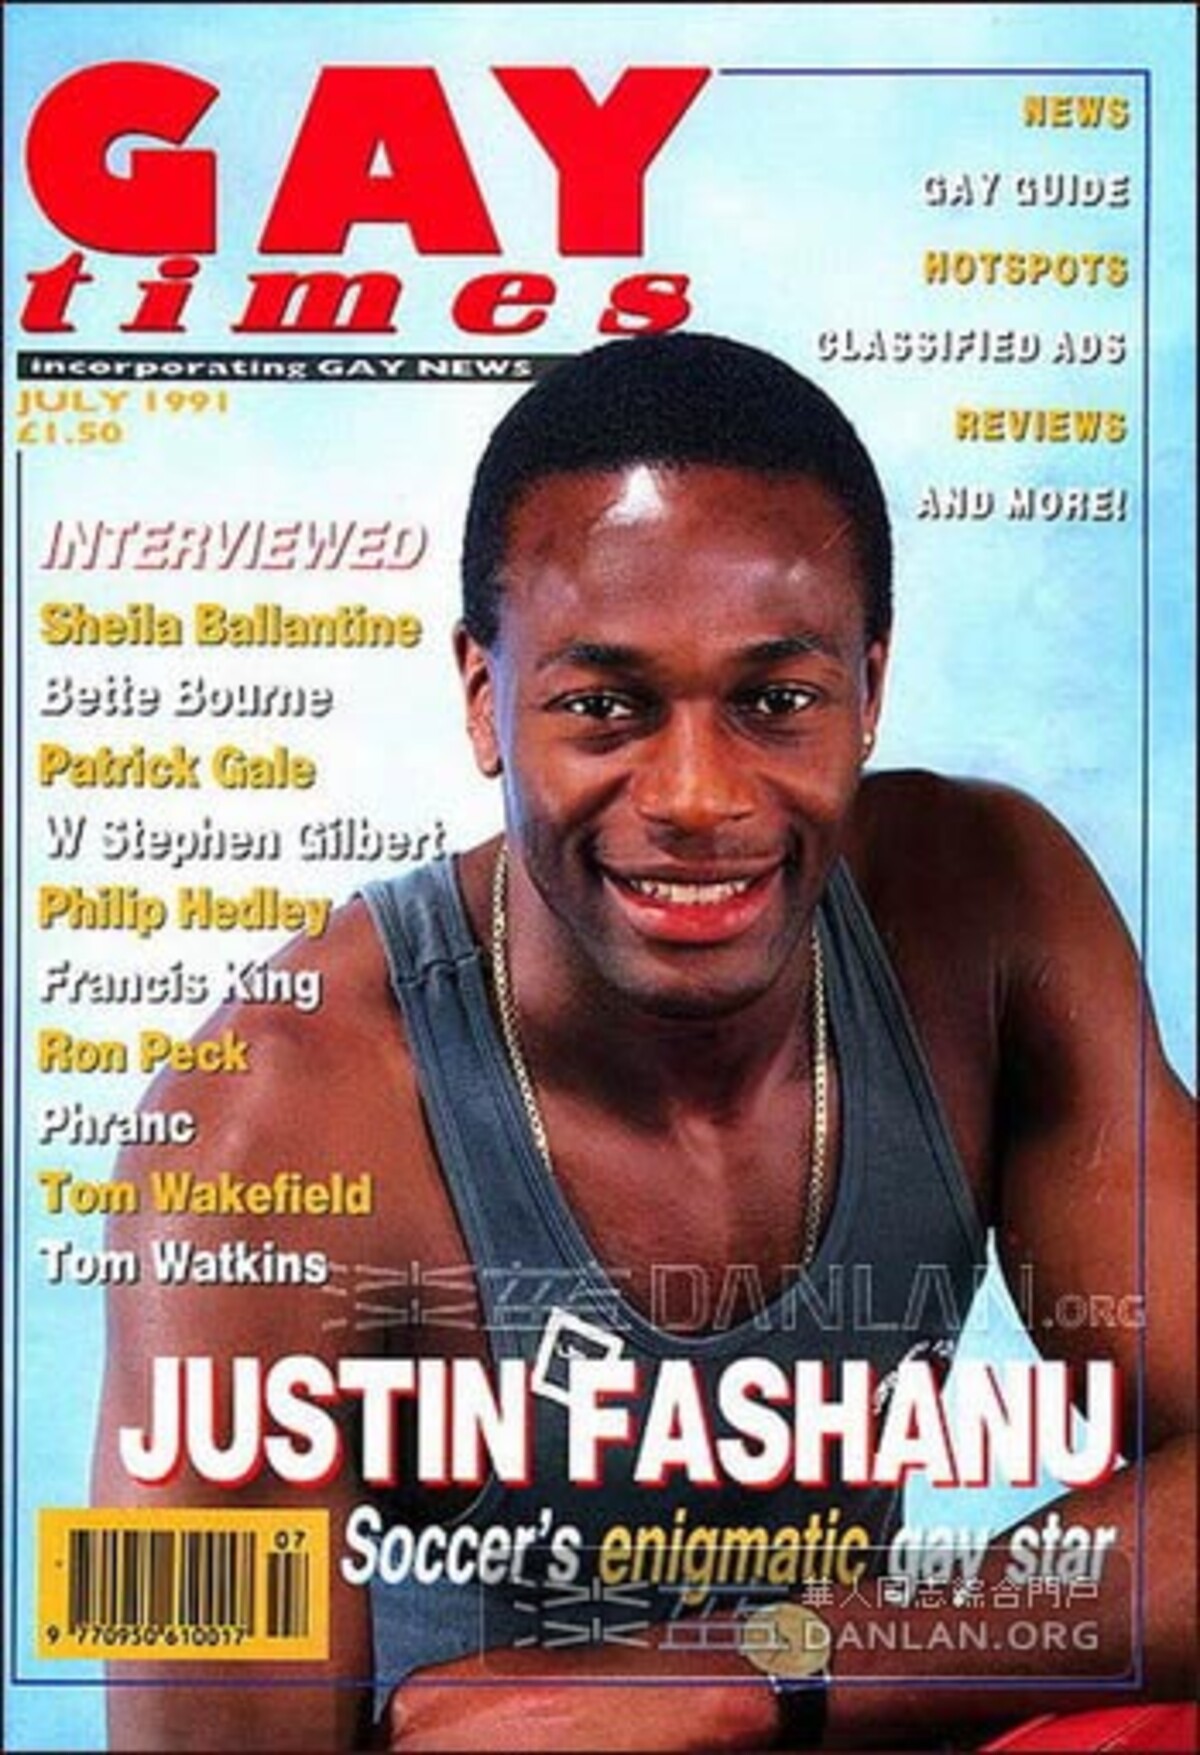 Justin Fashanu byl prvním fotbalistou, který udělal coming out. Jeho život ale skončil tragicky.